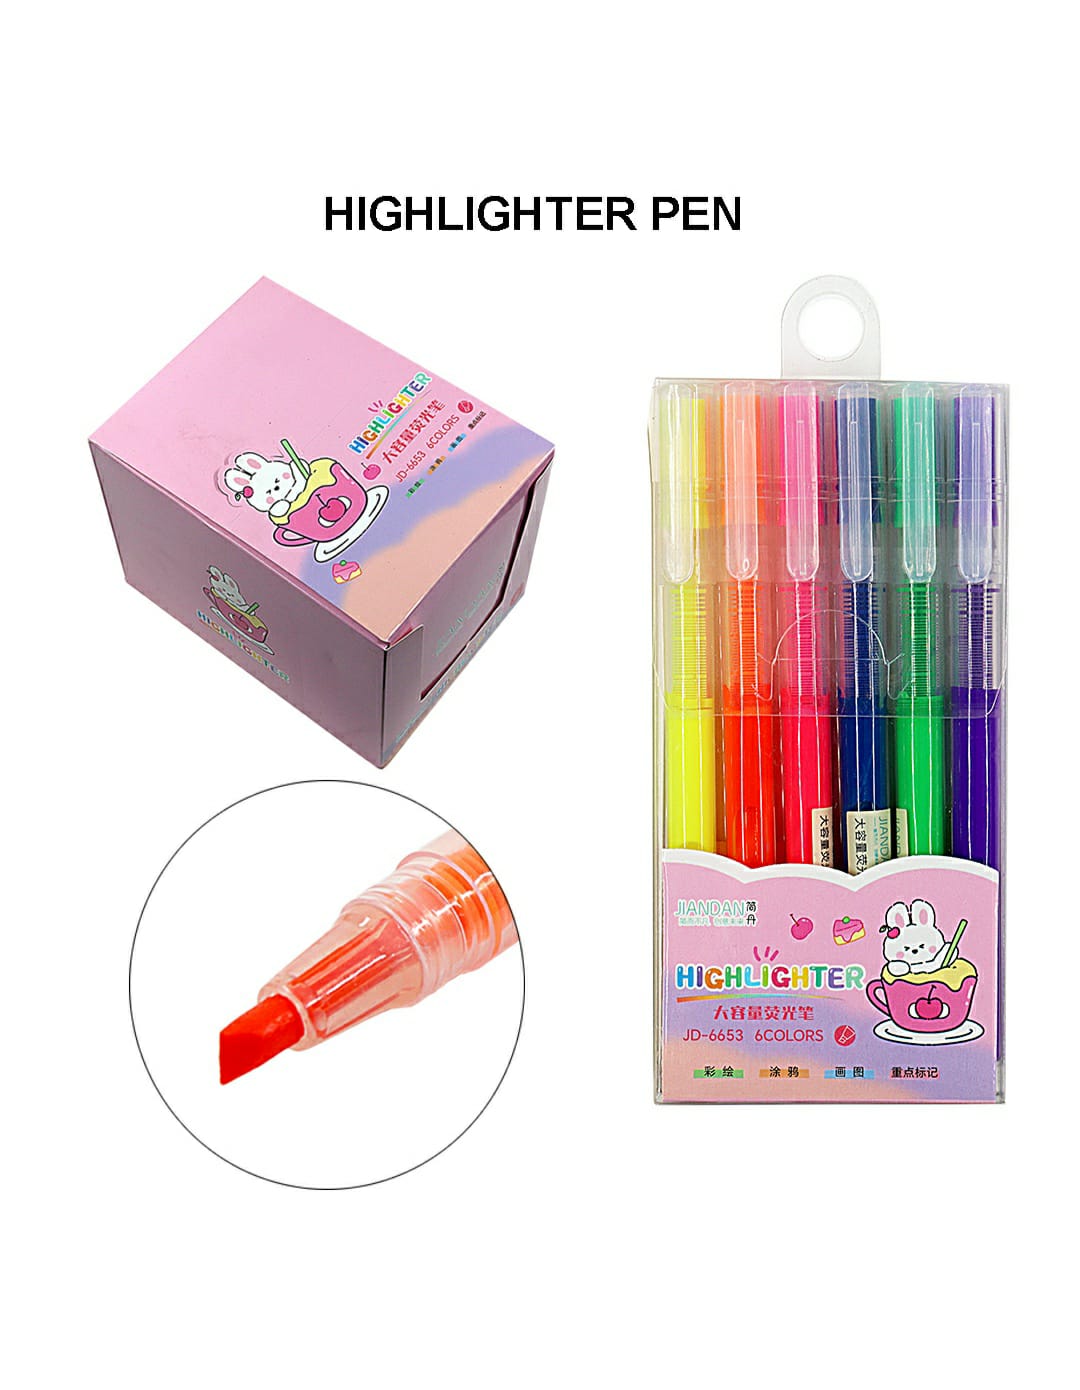 Highlighter Pen Jd6653 | INKARTO